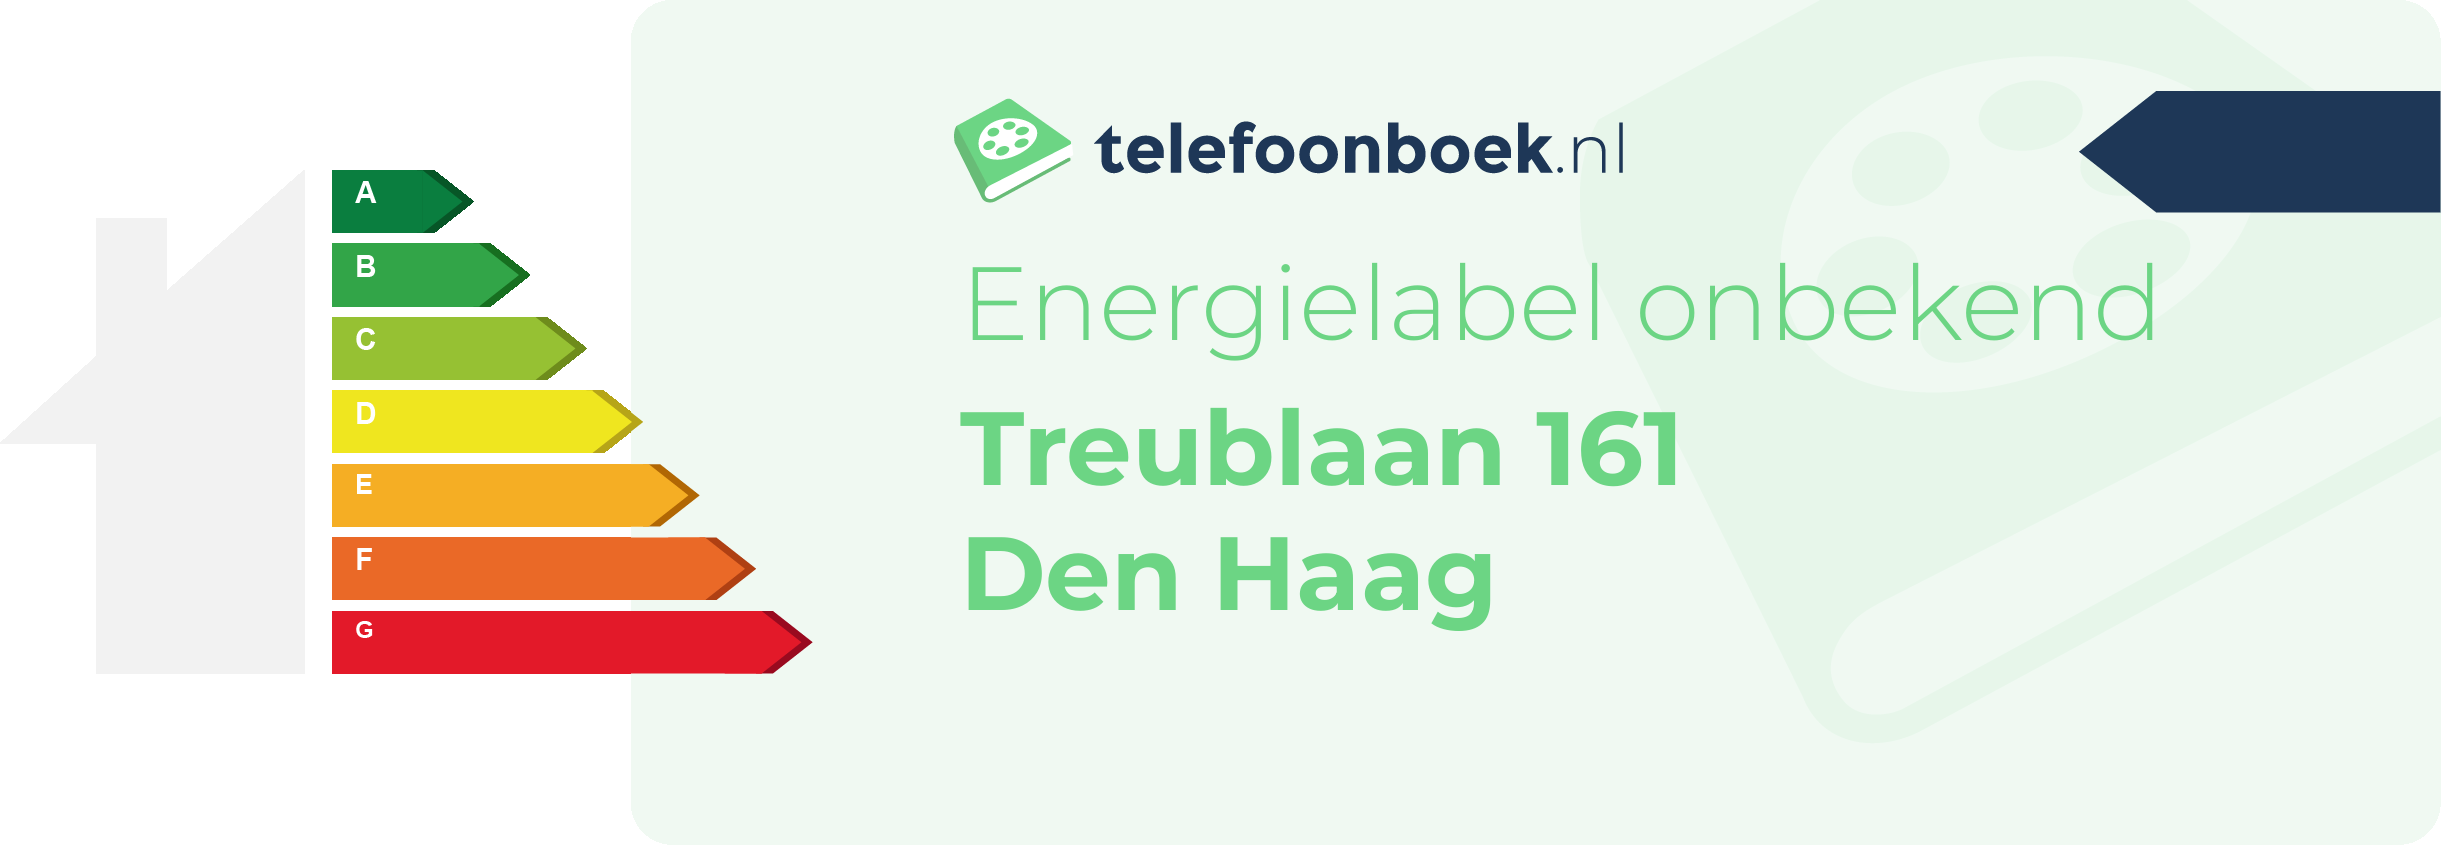 Energielabel Treublaan 161 Den Haag